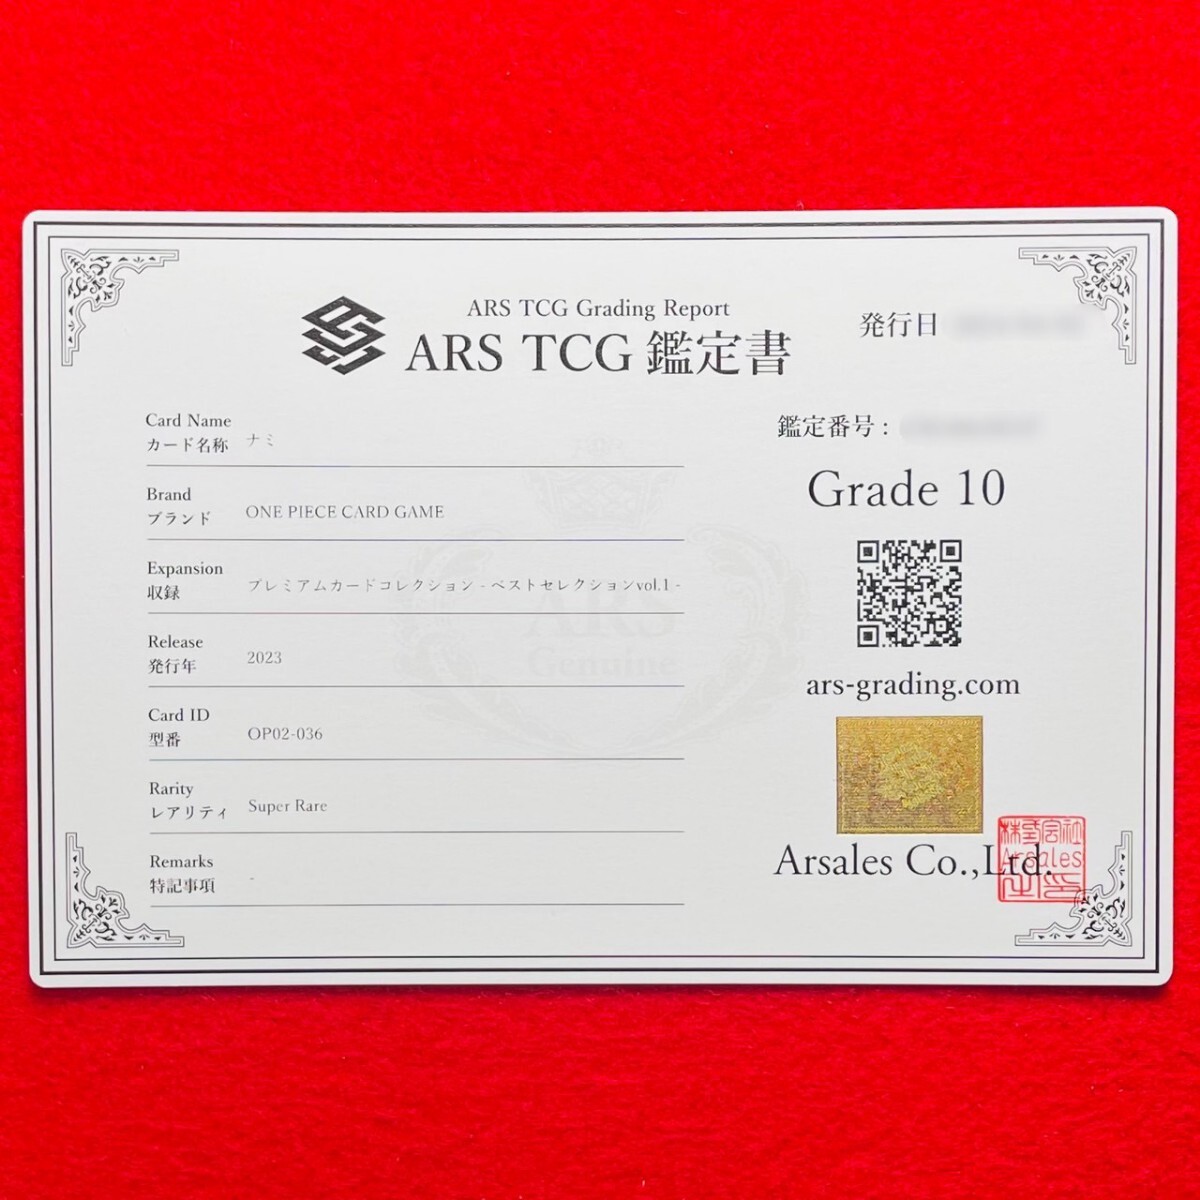 【ARS鑑定 10】ナミ Super Rare OP02-036 SR ワンピースカードゲーム PSA BGS ARS10 鑑定品 プレミアムカード ベストセレクションvol.1の画像3